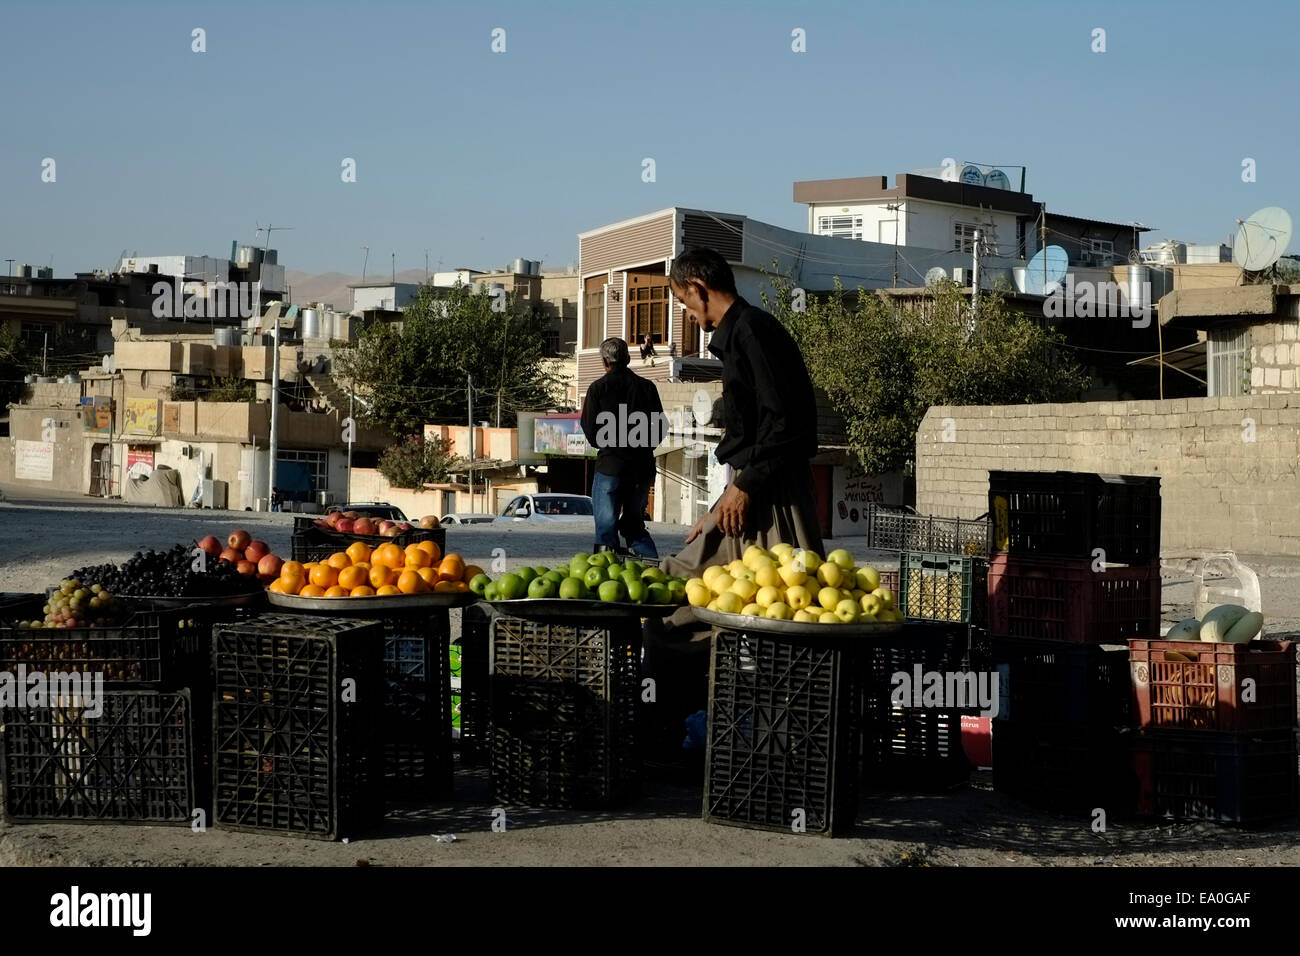 Fruits à vendre dans la rue à Souleimaniyeh, également appelé aussi Slemani, une ville dans le Kurdistan irakien dans le nord-est de l'Iraq Banque D'Images